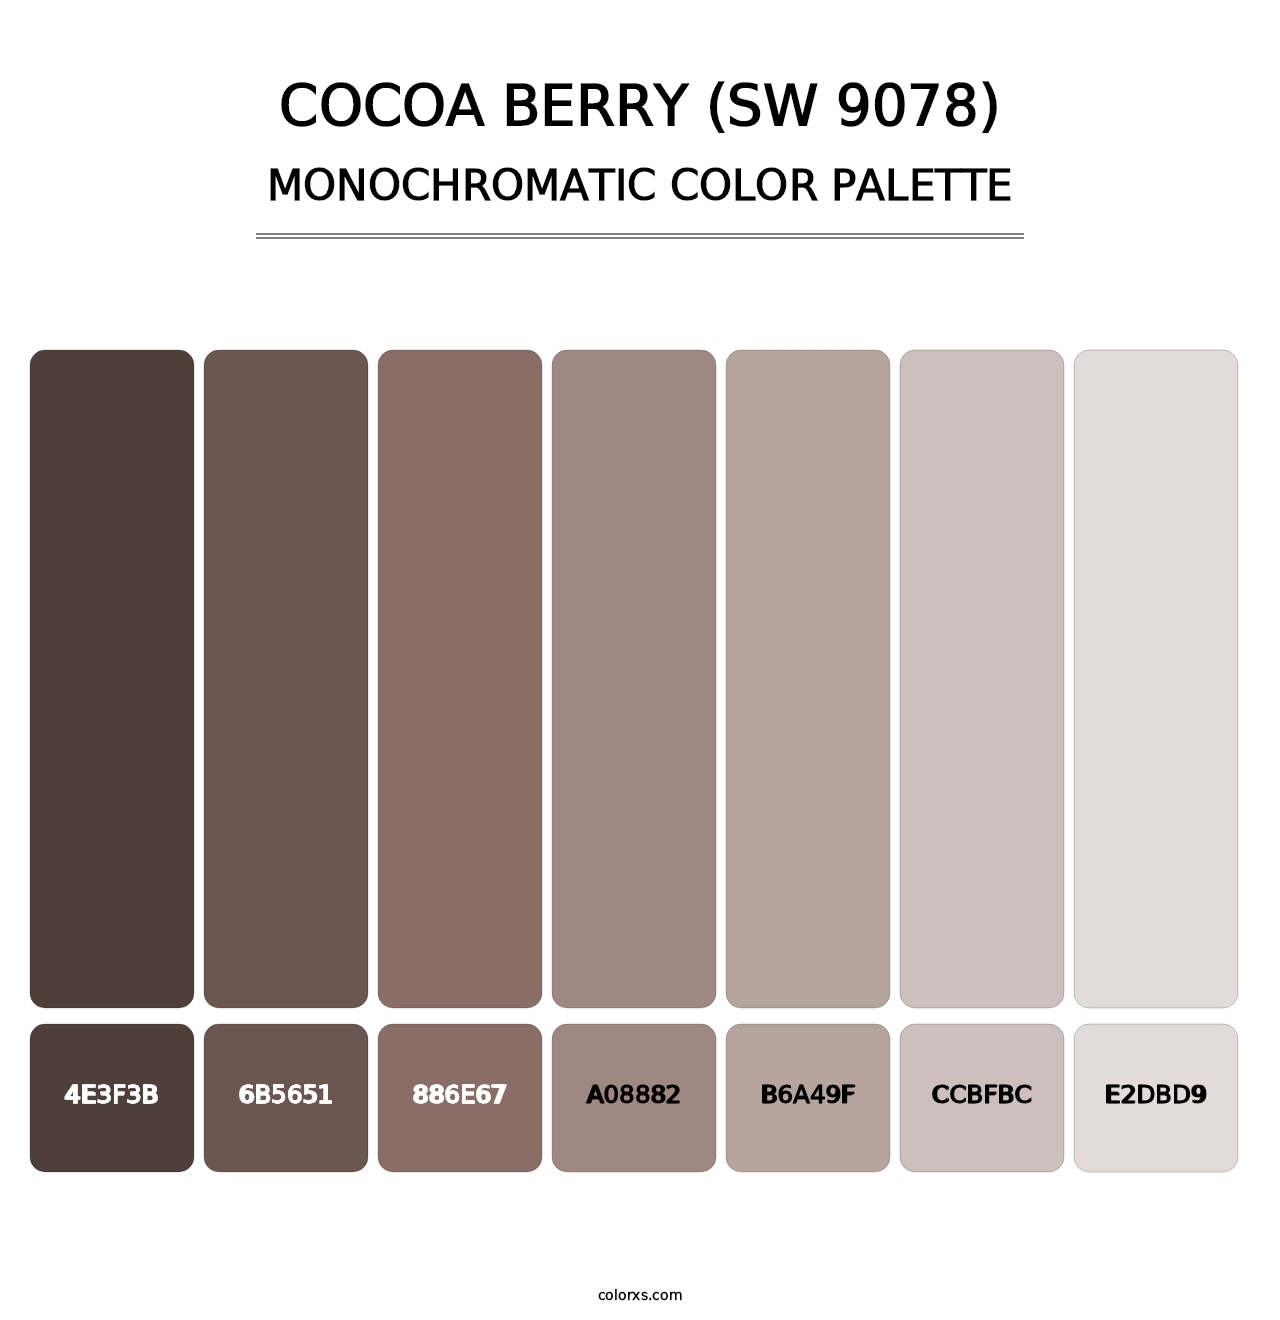 Cocoa Berry (SW 9078) - Monochromatic Color Palette